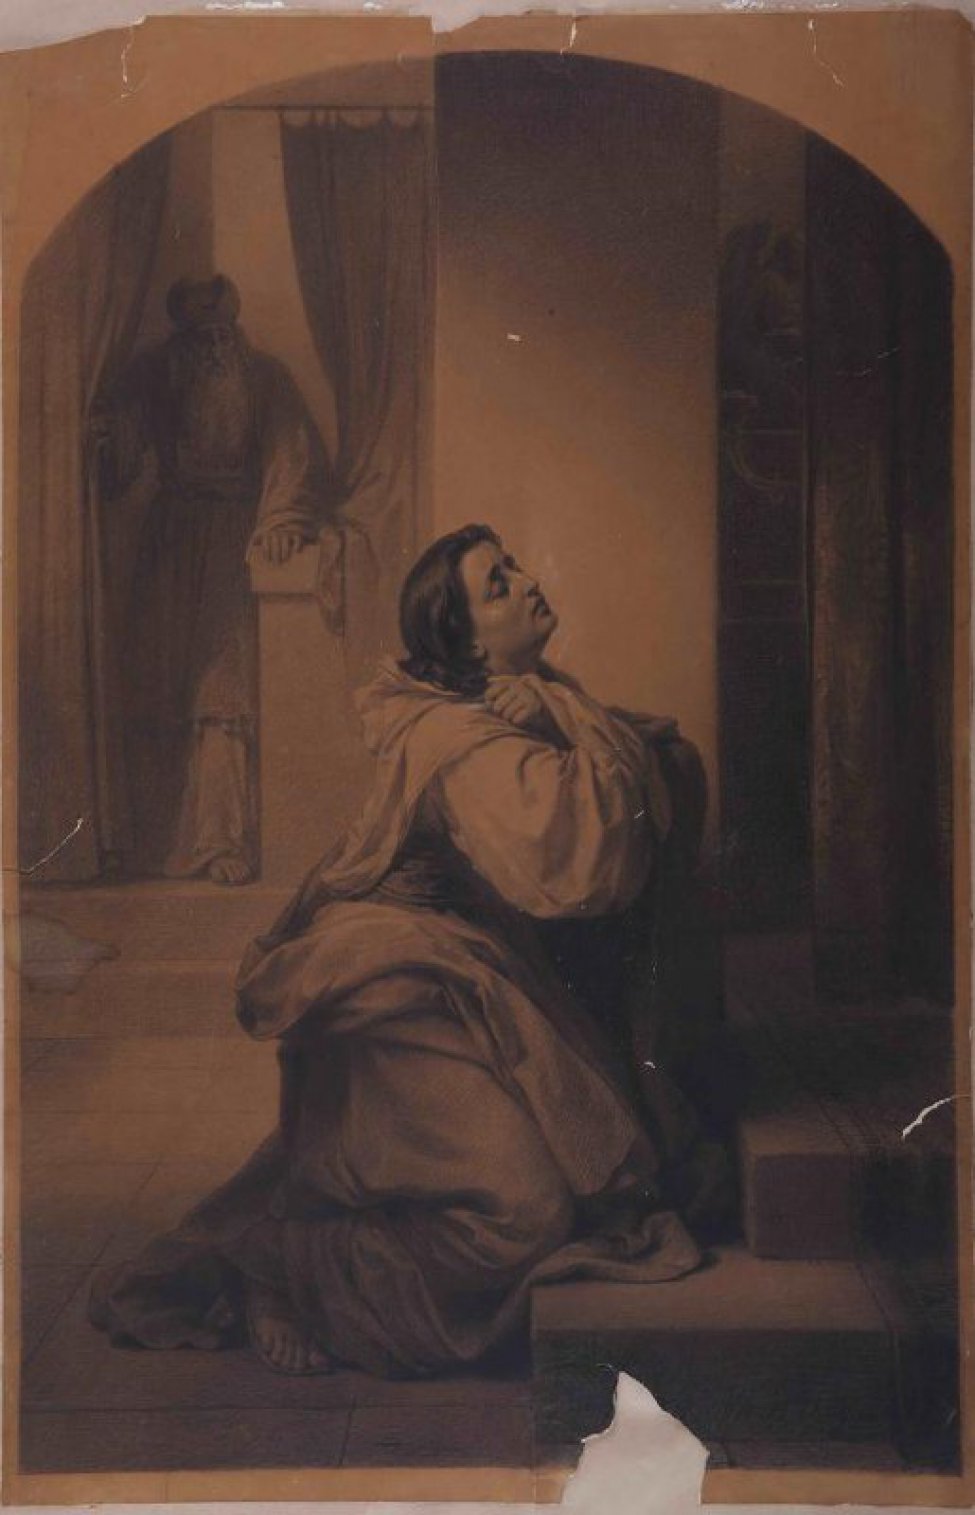 Изображена женщина, стоящая на коленях у ступеней алтаря; руки сложены на груди, голова немного откинута назад, глаза полузакрыты. Слева за занавесом изображен священник. Рисунок исполнен в 1/2 величины